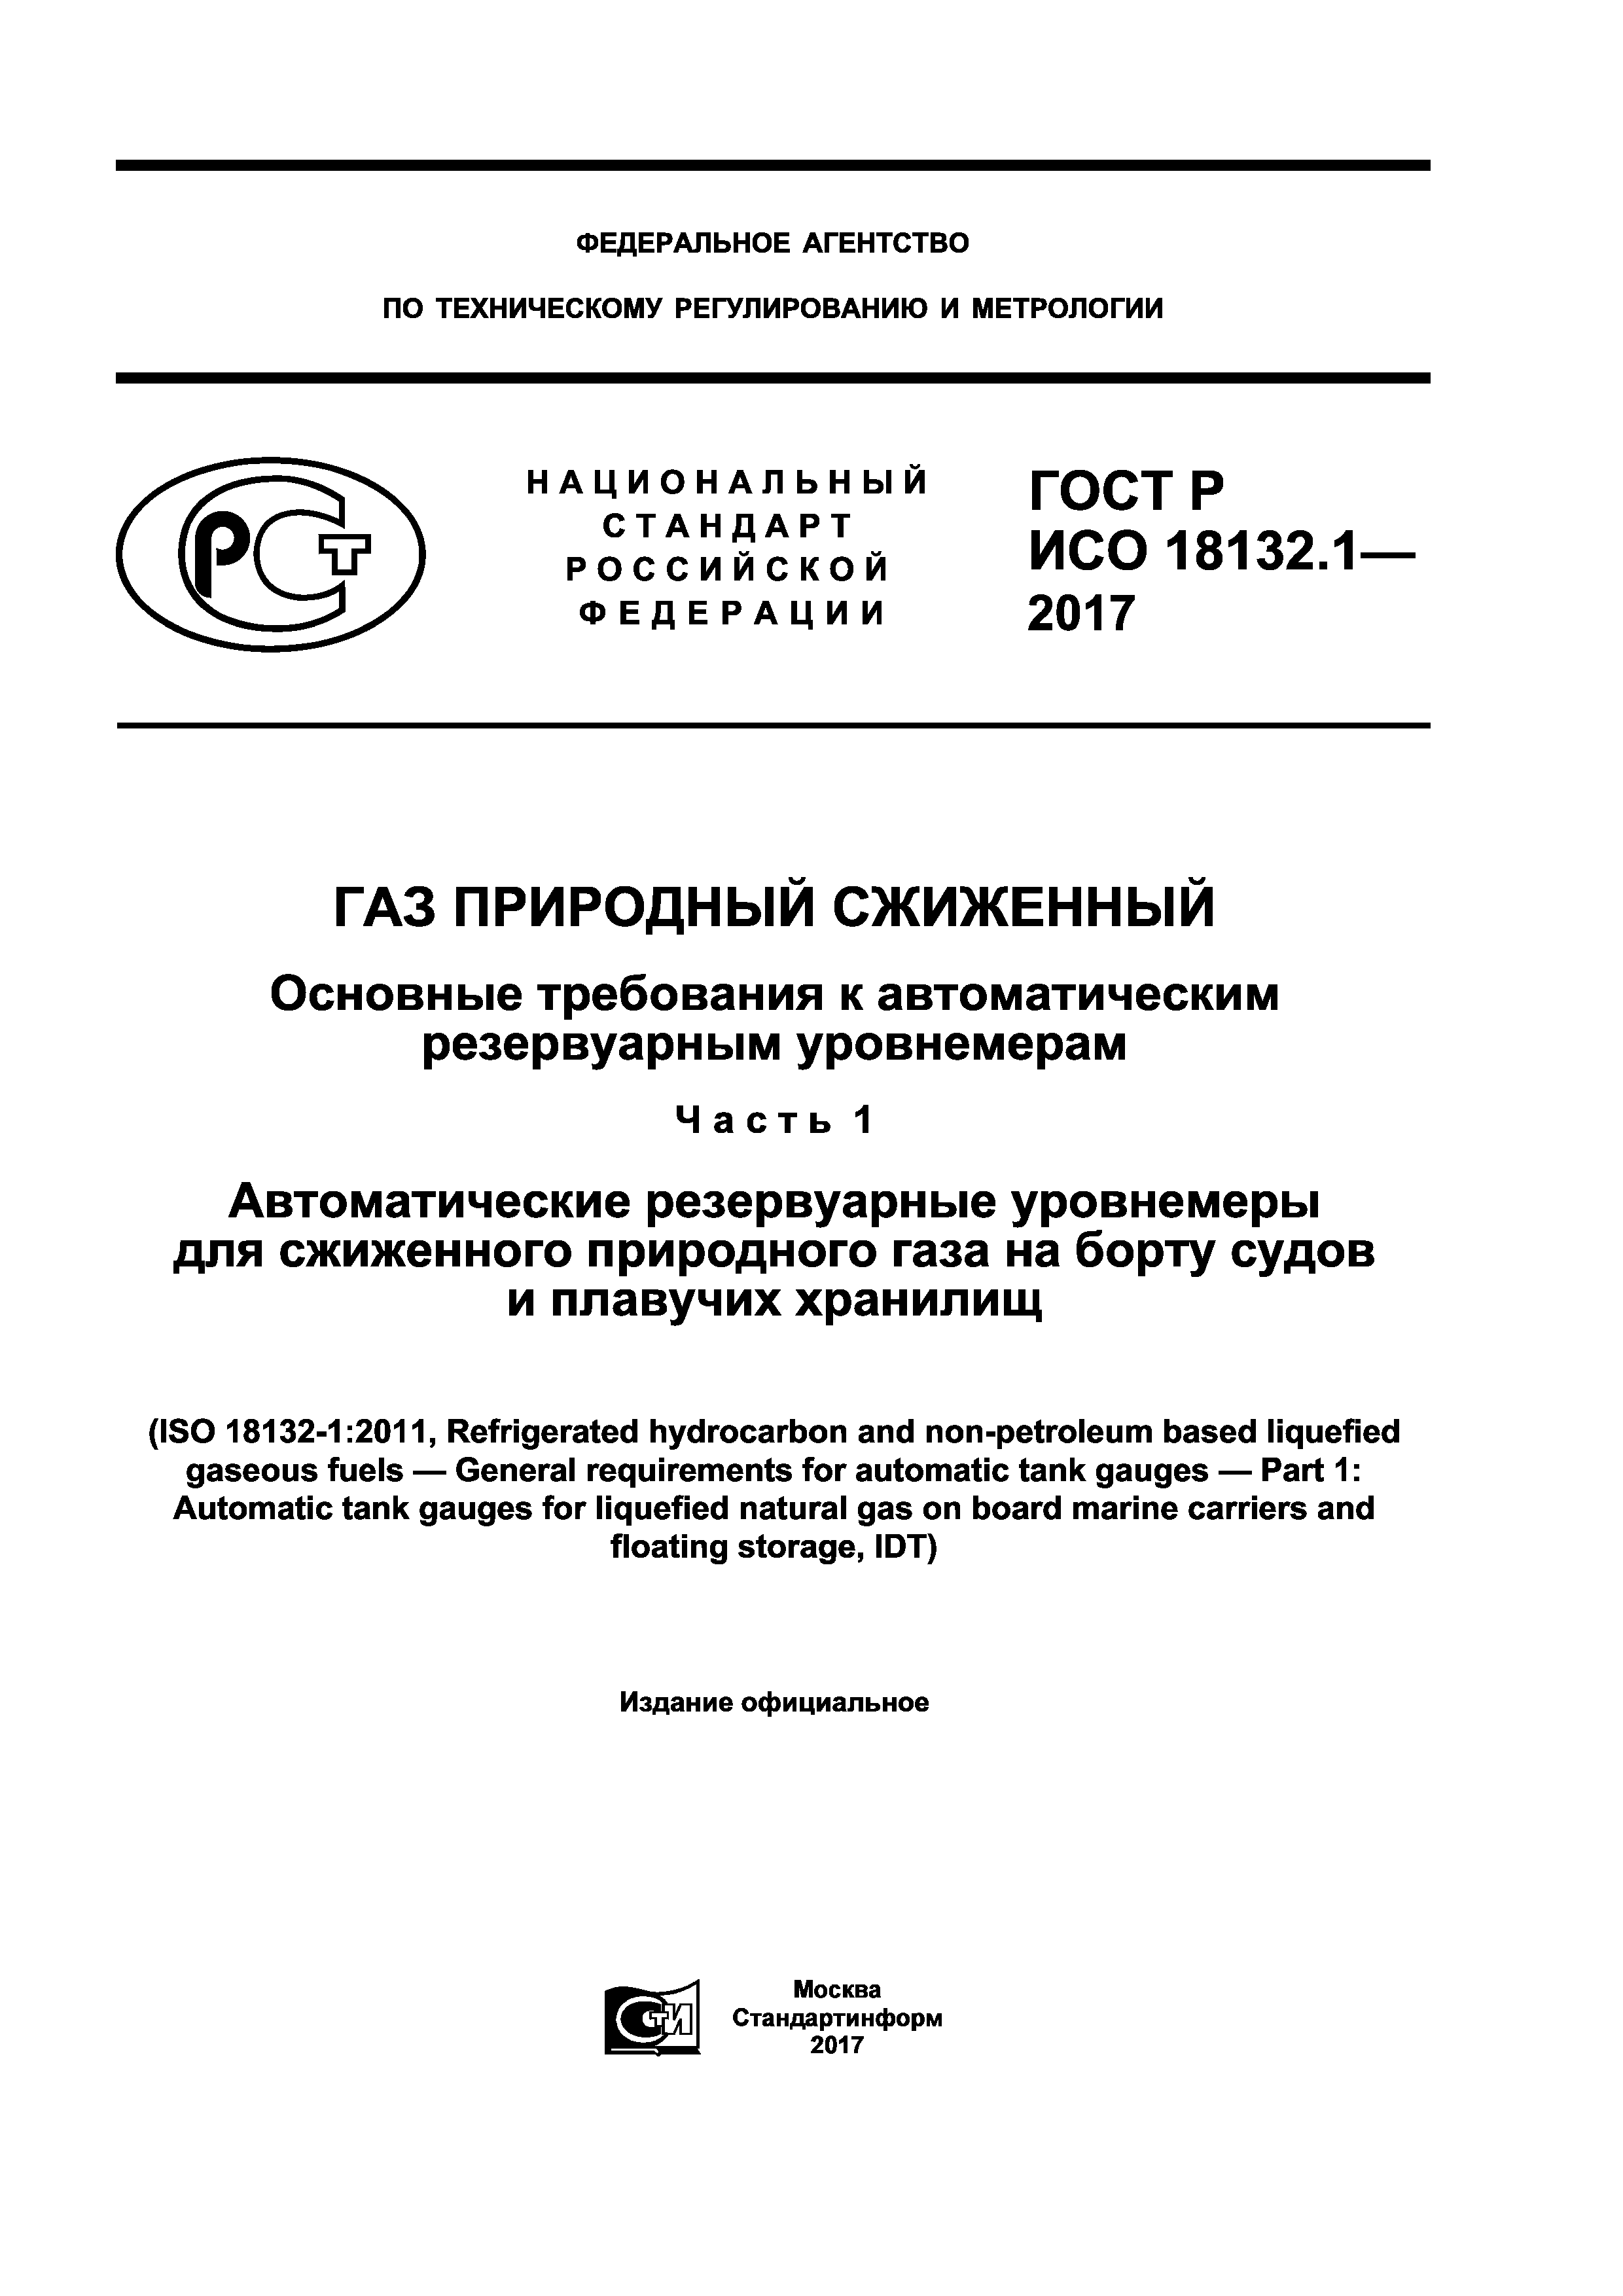 ГОСТ Р ИСО 18132.1-2017